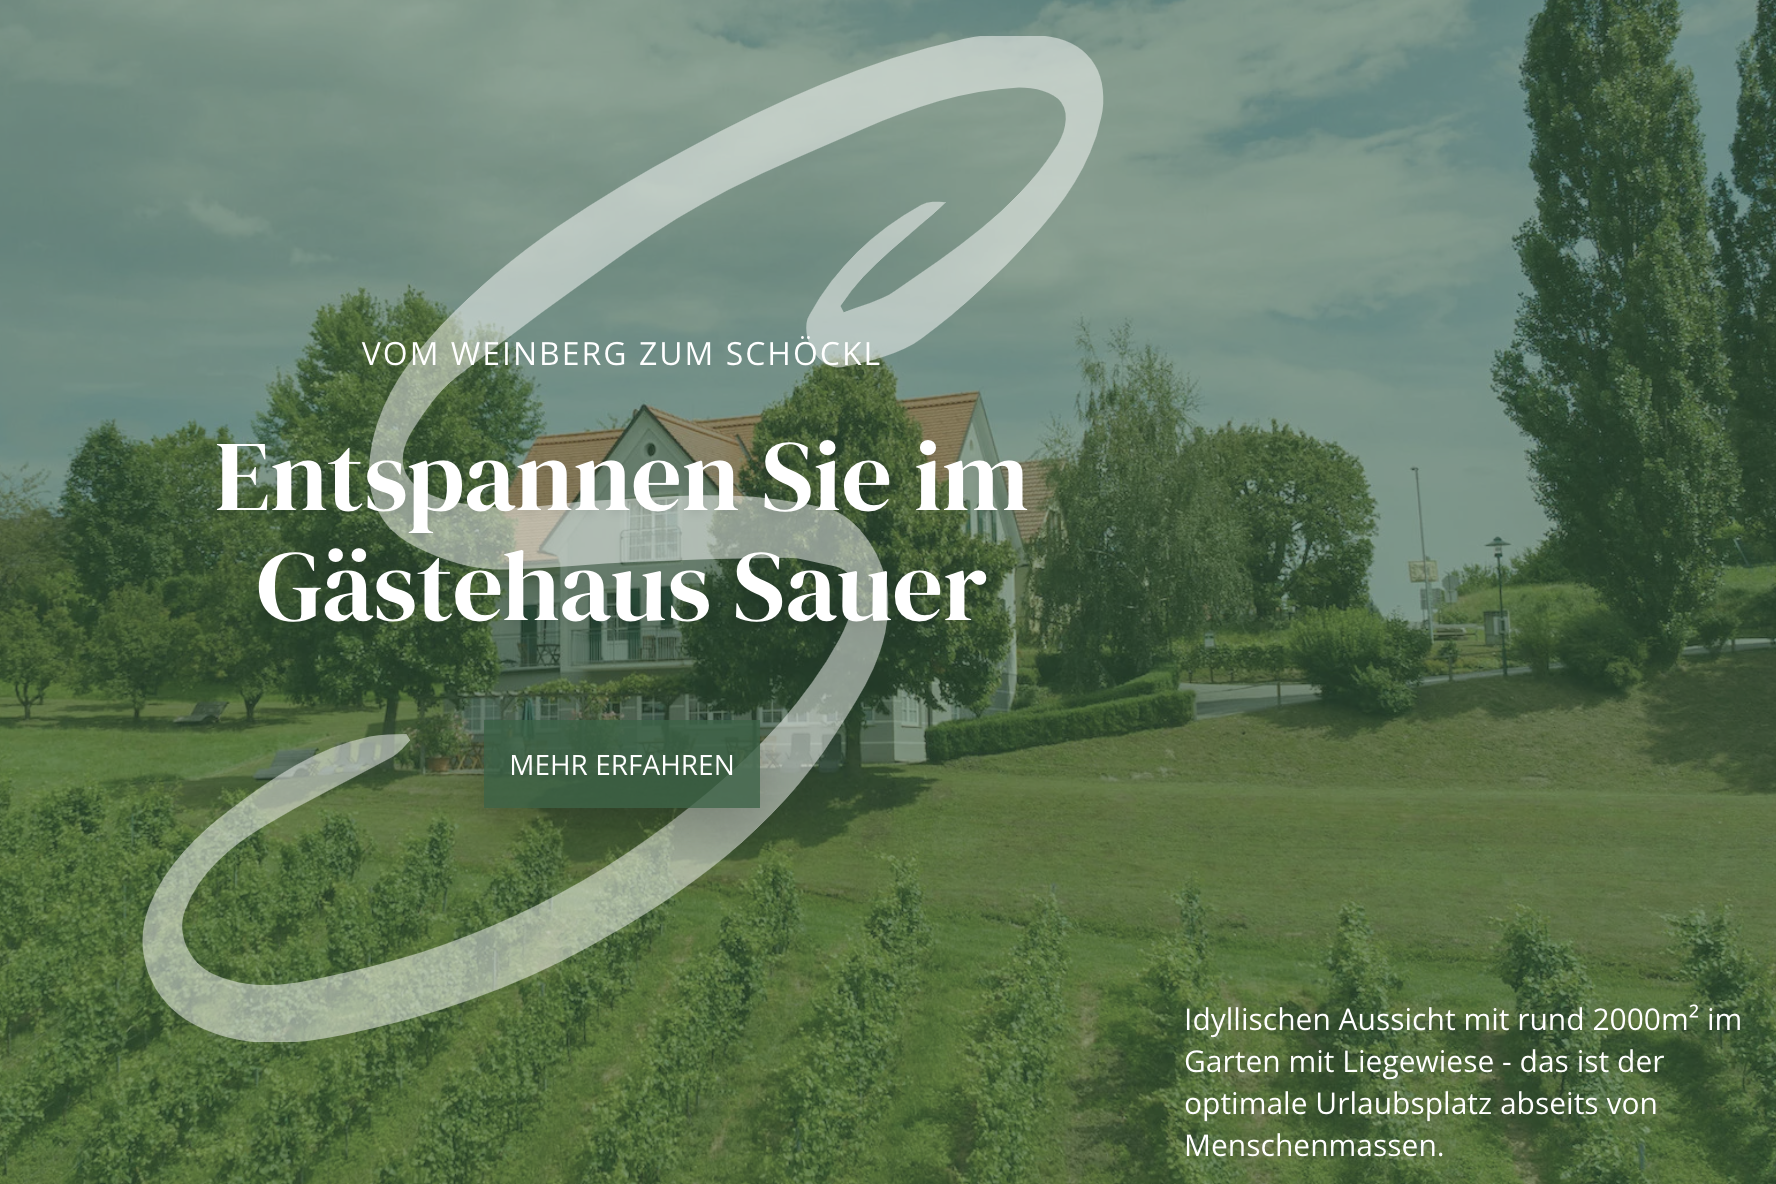 Nova spletna stran – Dobrodošli v gostišču in hiši vitalnosti Sauer v Kitzecku!